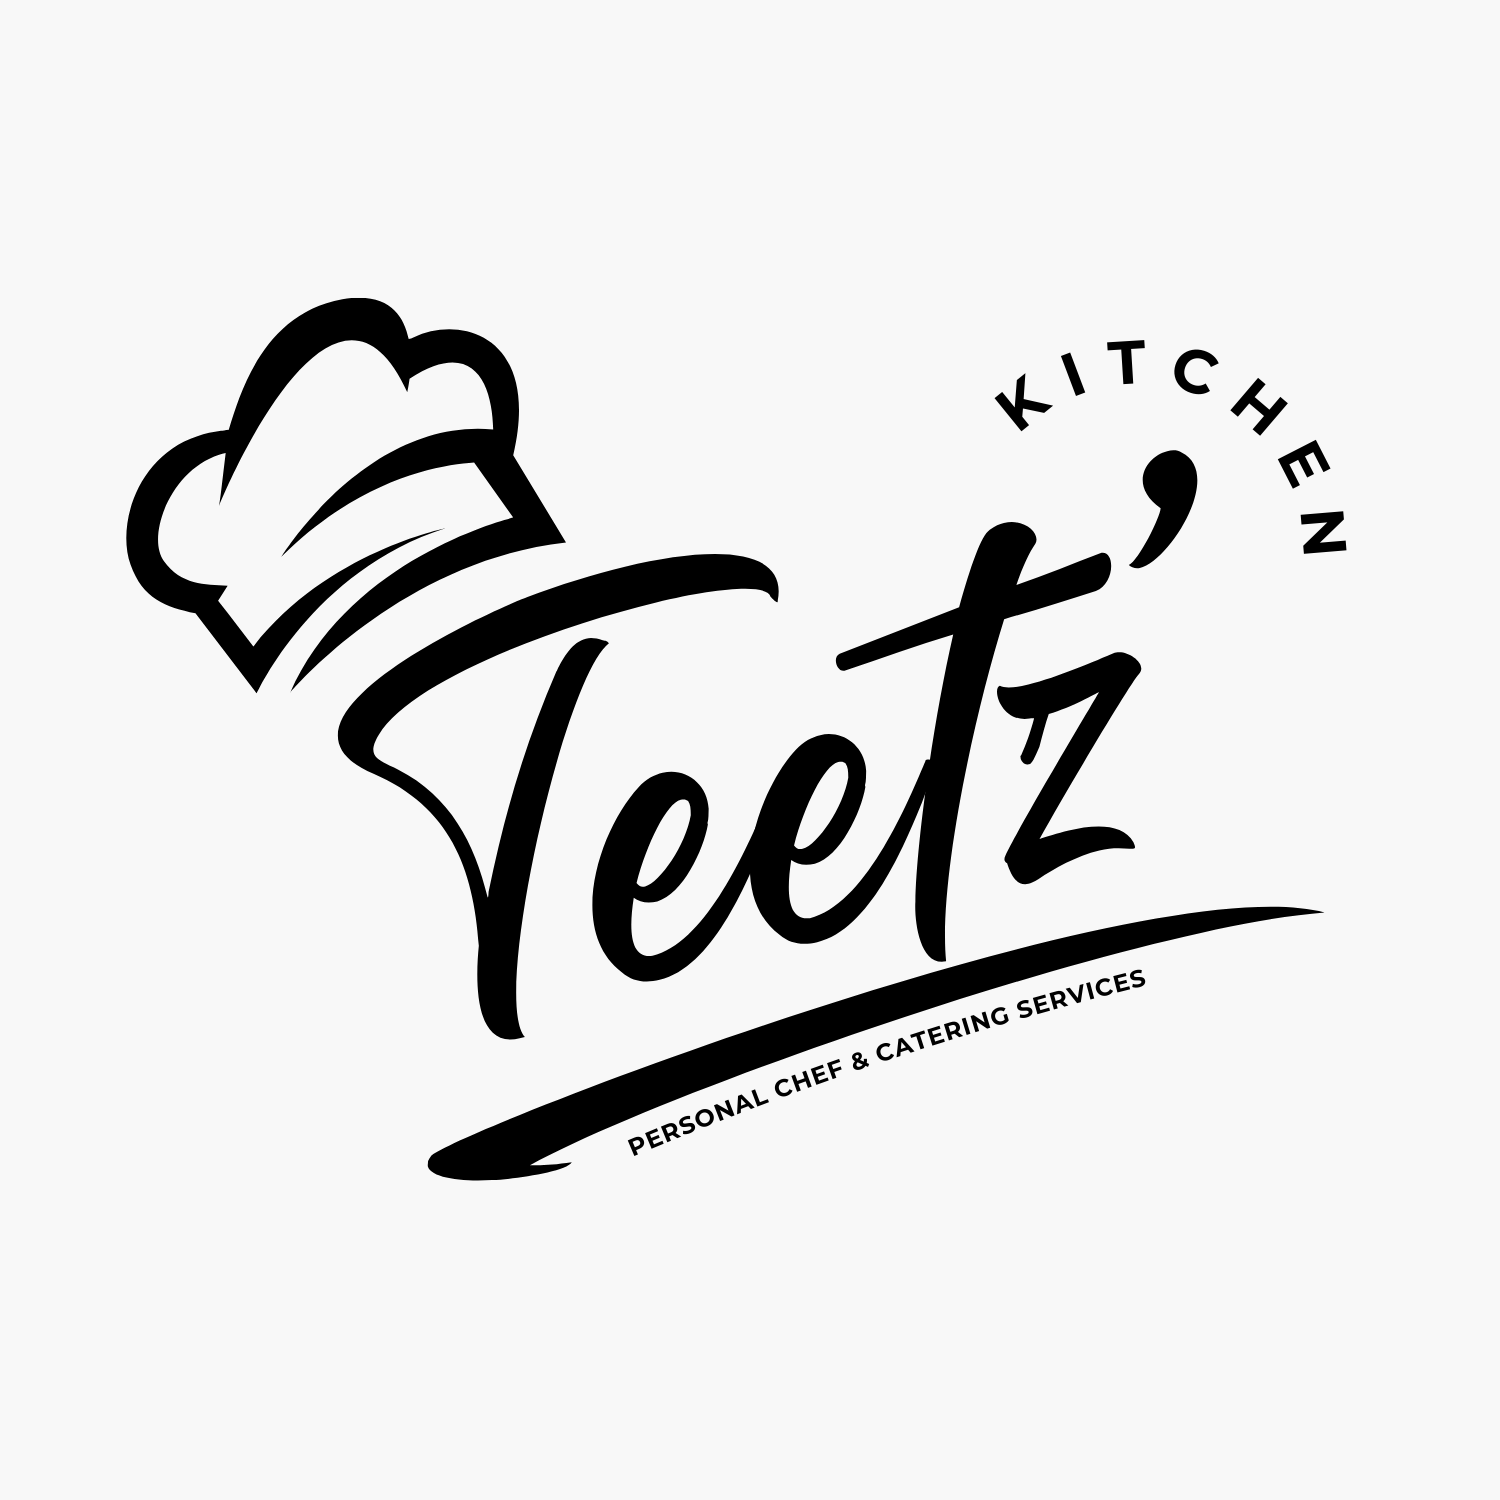 Teetz' Kitchen